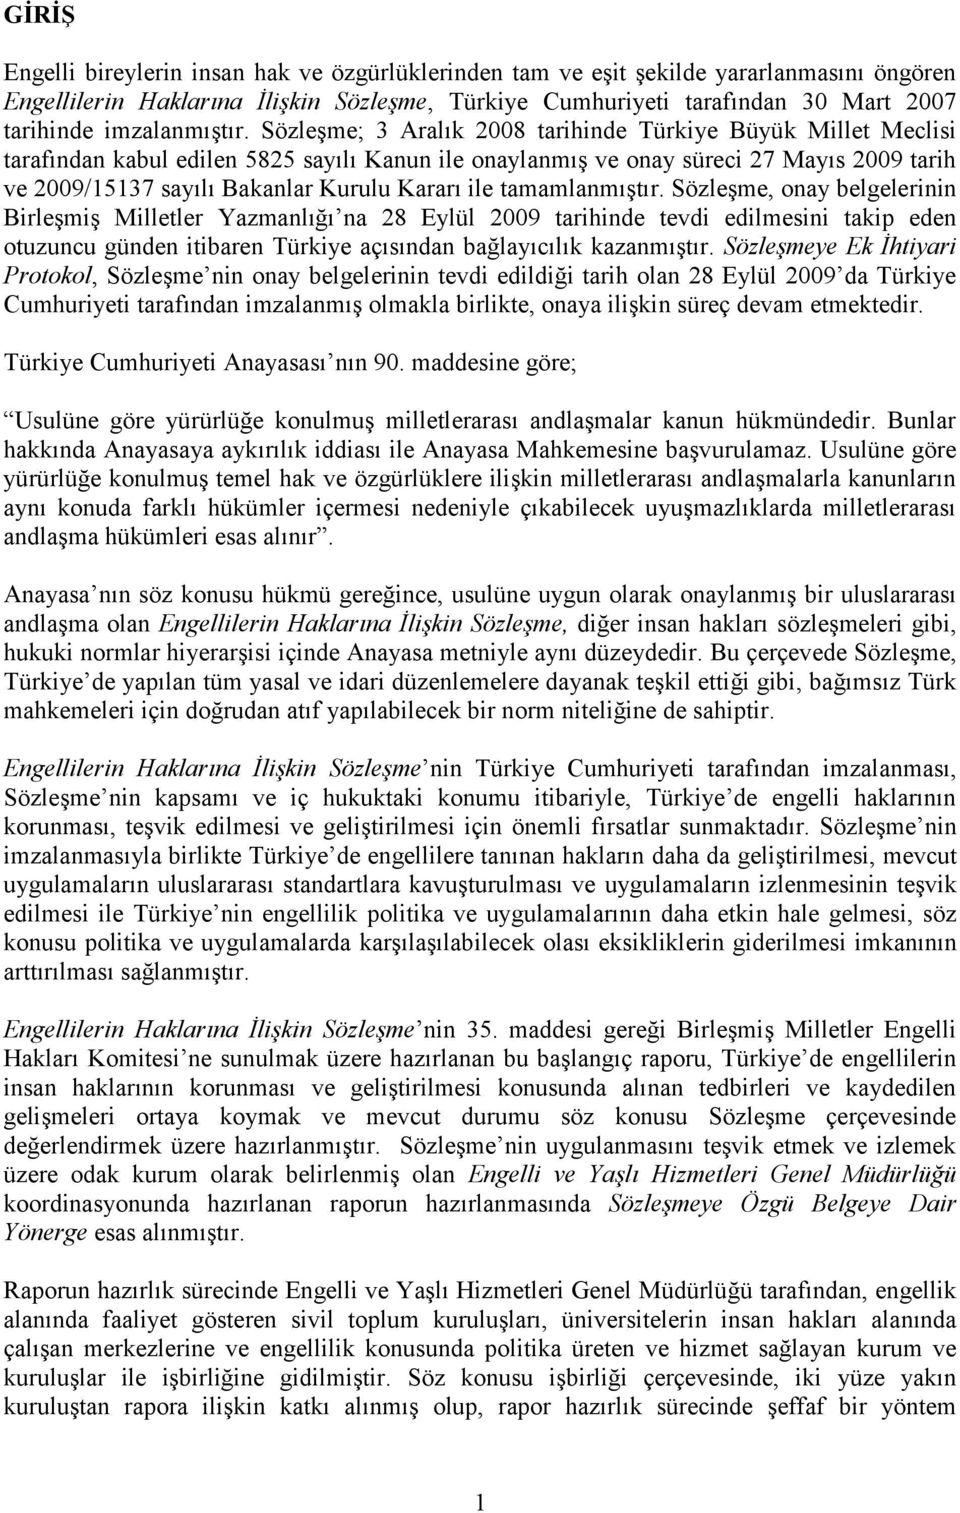 Sözleşme; 3 Aralık 2008 tarihinde Türkiye Büyük Millet Meclisi tarafından kabul edilen 5825 sayılı Kanun ile onaylanmış ve onay süreci 27 Mayıs 2009 tarih ve 2009/15137 sayılı Bakanlar Kurulu Kararı